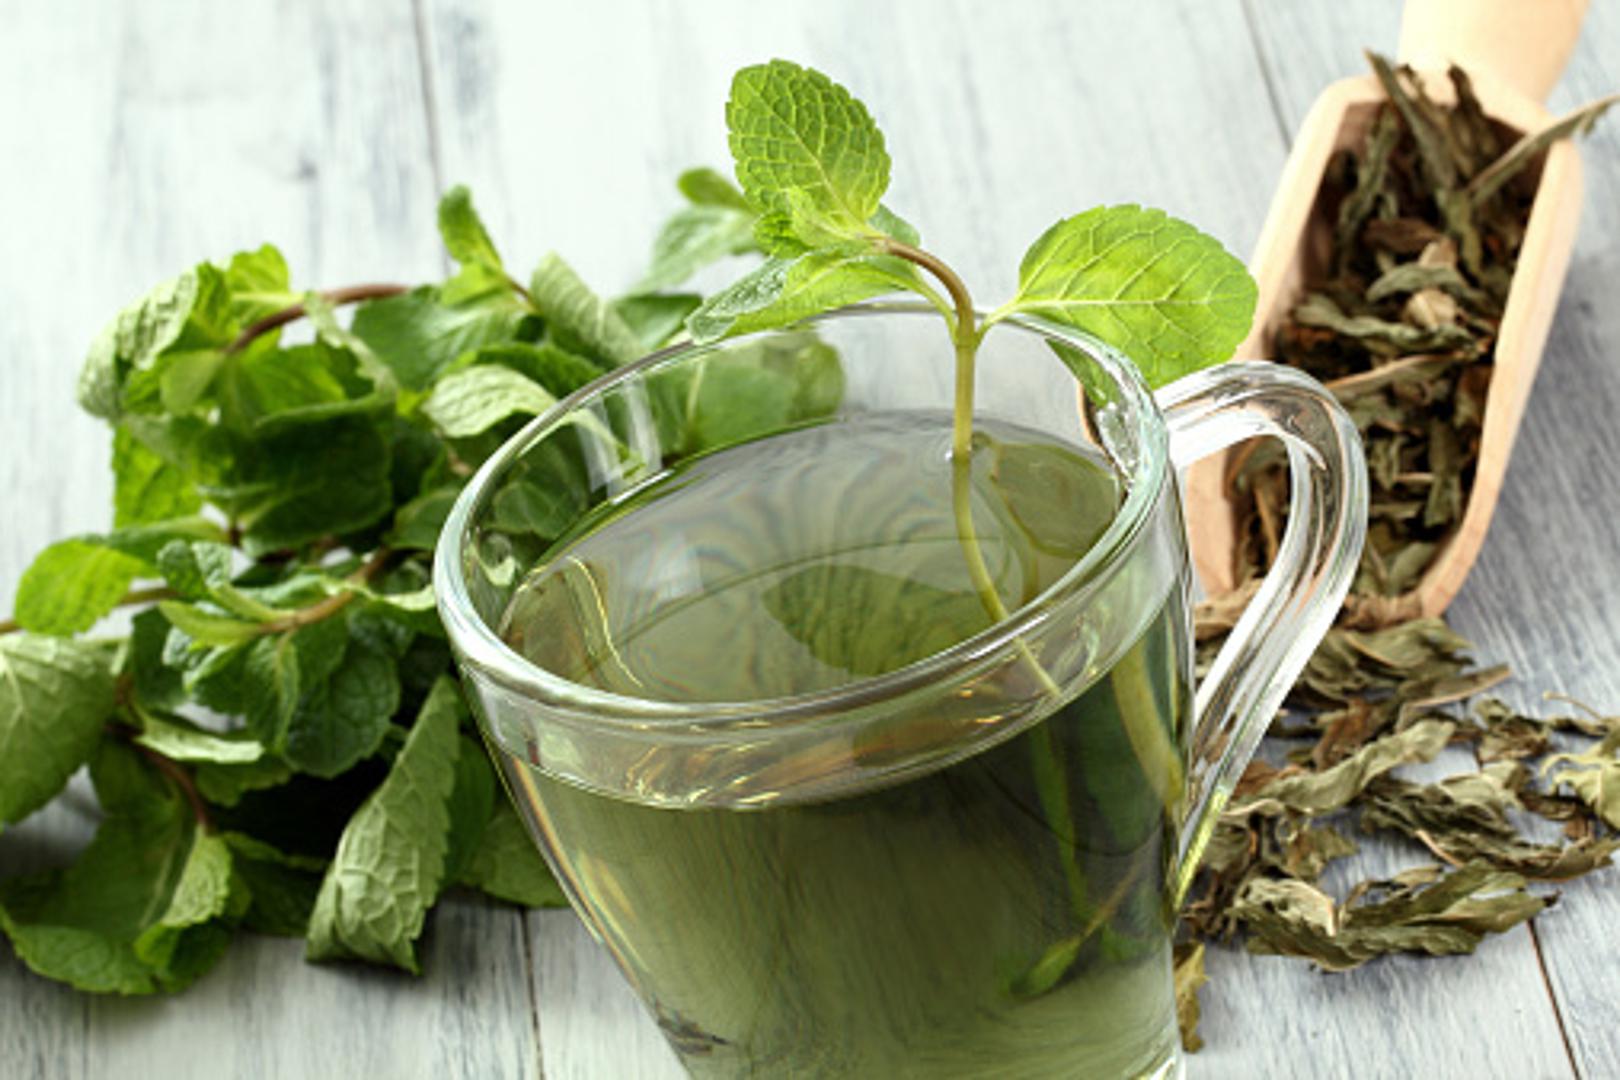 Zeleni čaj također bi se trebao naći na vašem popisu. Jedan je od omiljenijih čajeva i mnogo je ljudi koji ga obožavaju piti. Poboljšava rad mozga, potiče mršavljenje. 

